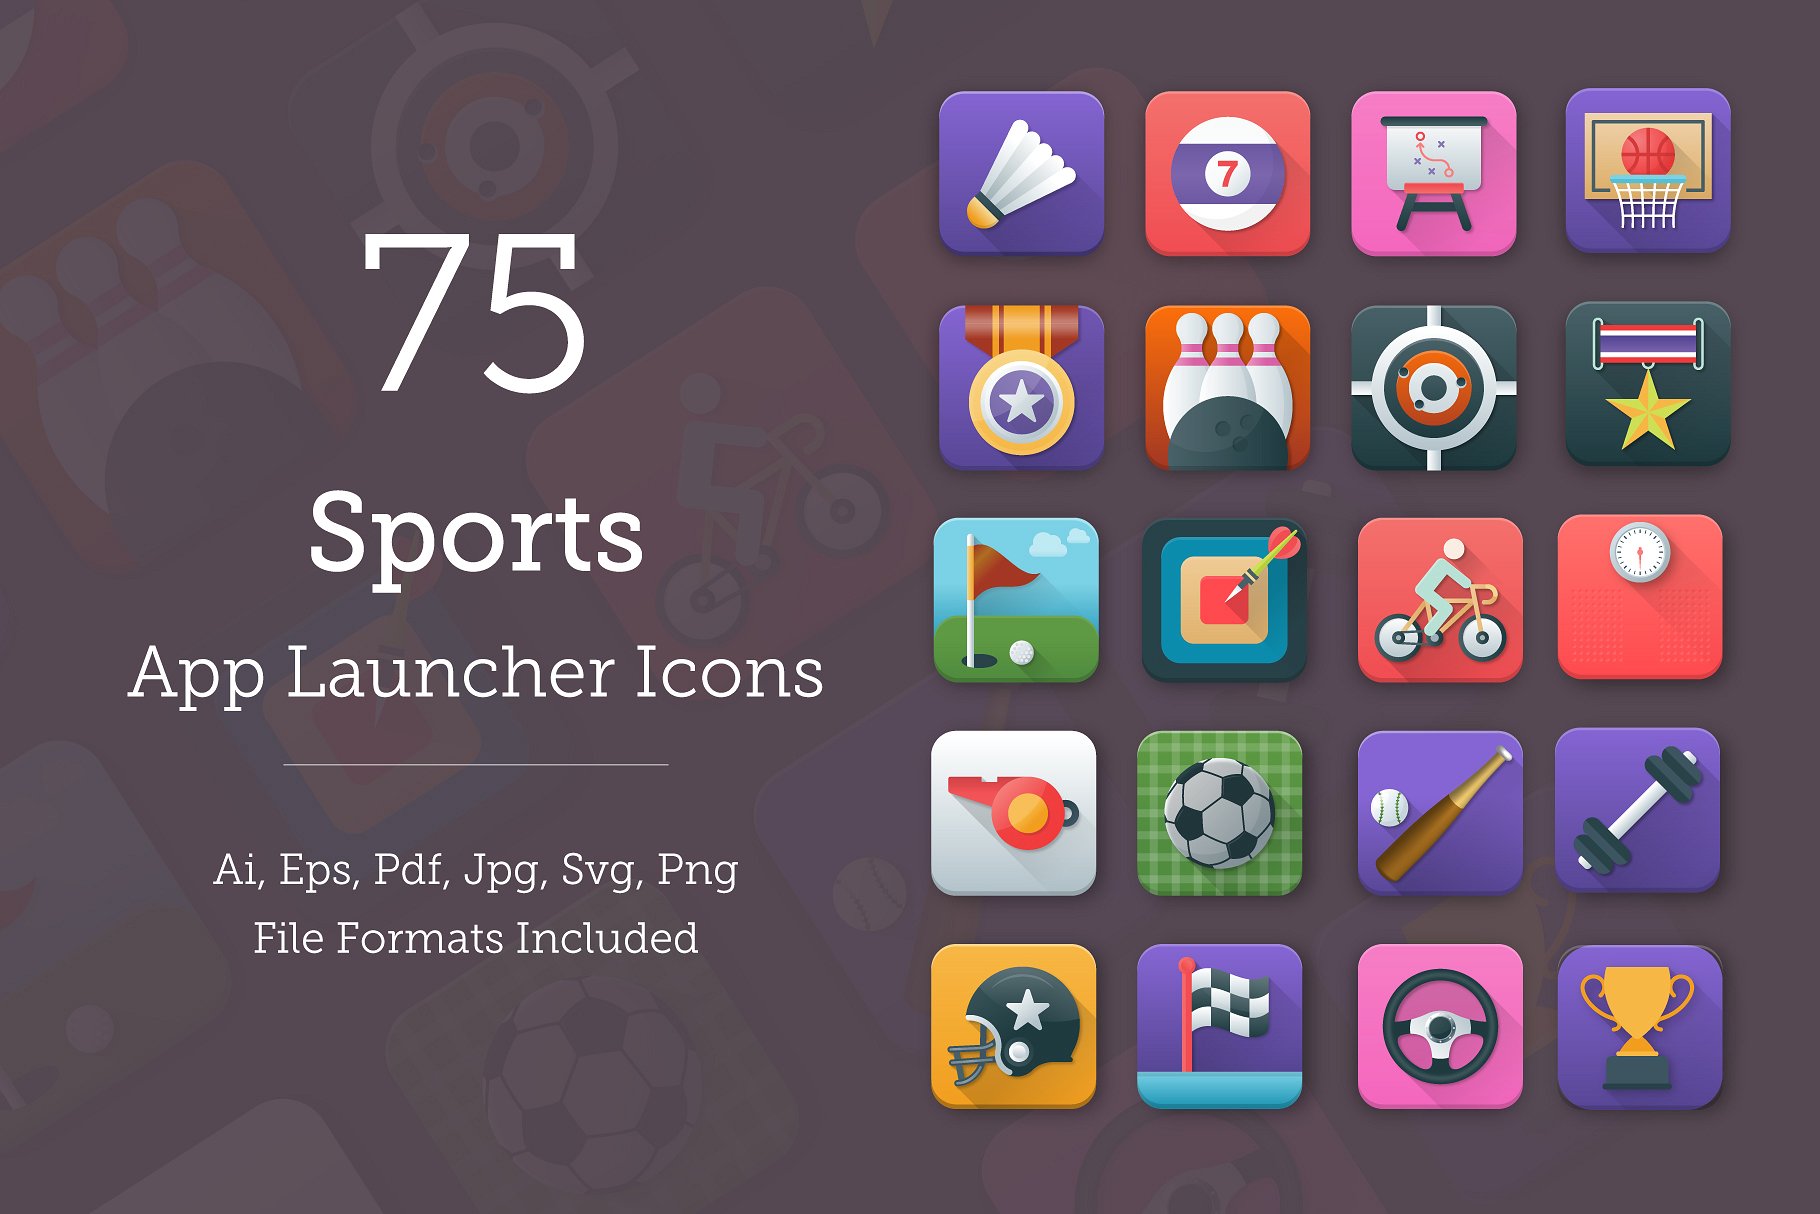 体育运动应用图标 75 Sports App Icons